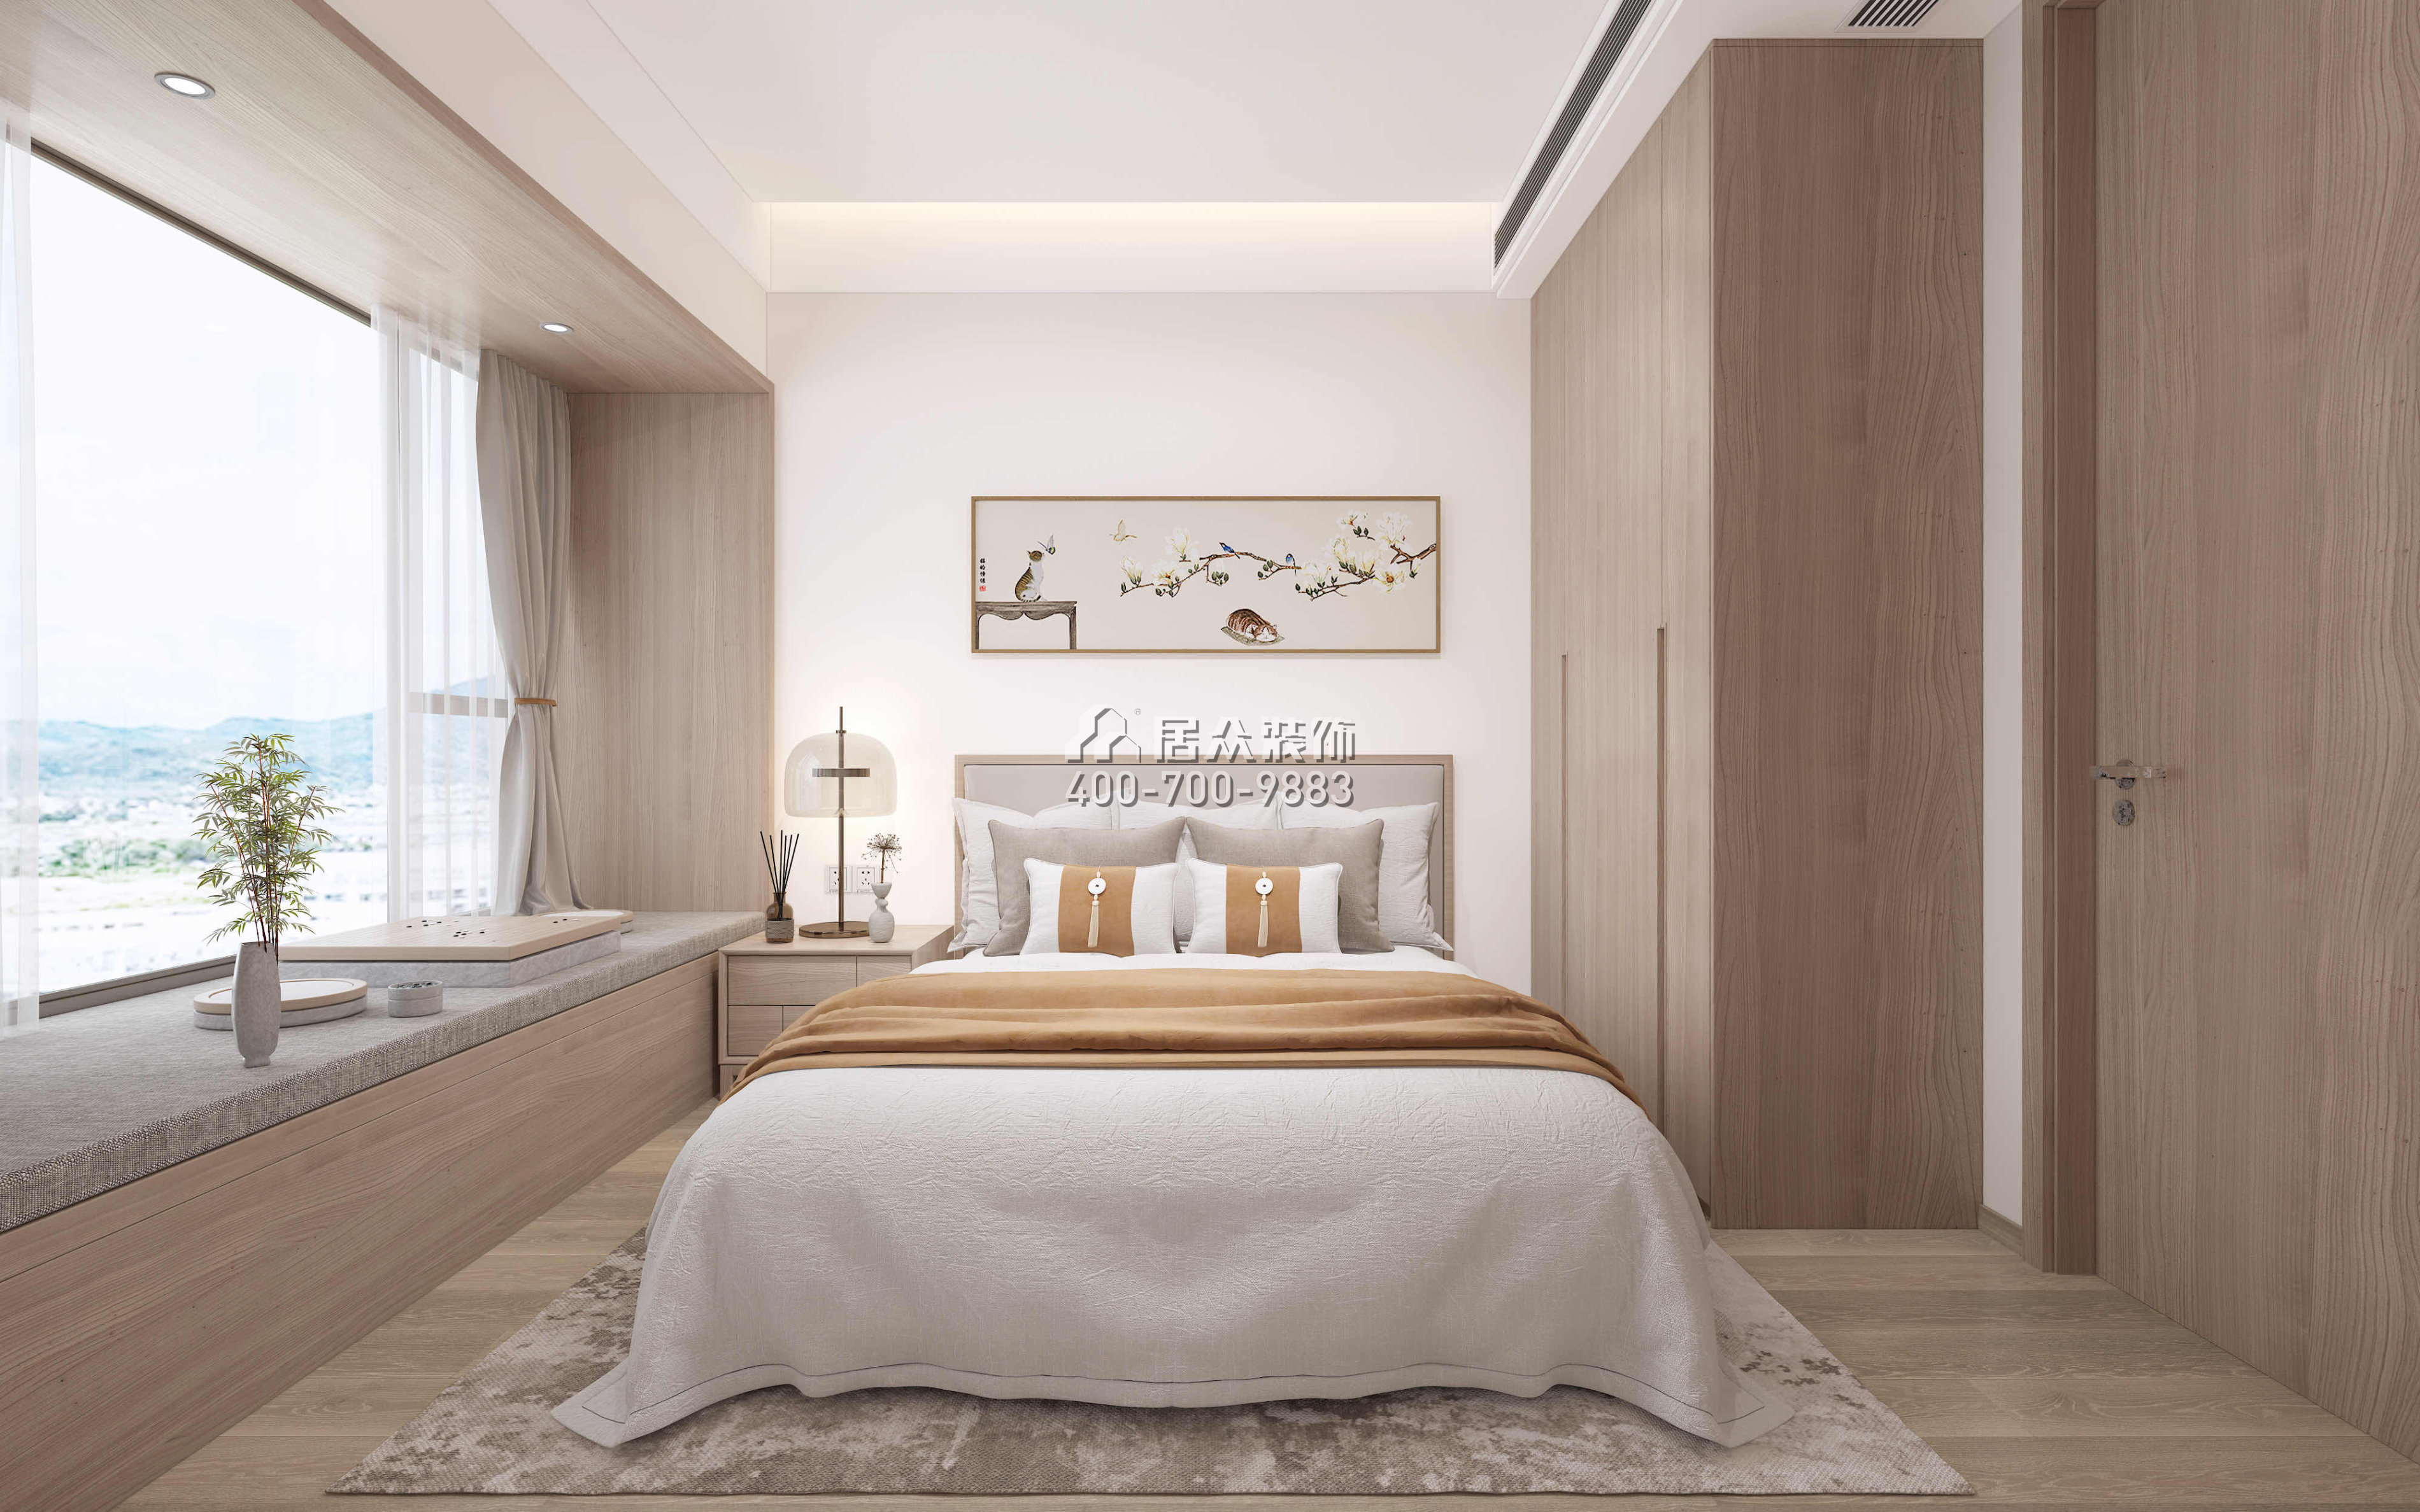 星河明居115平方米现代简约风格平层户型卧室kok电竞平台效果图